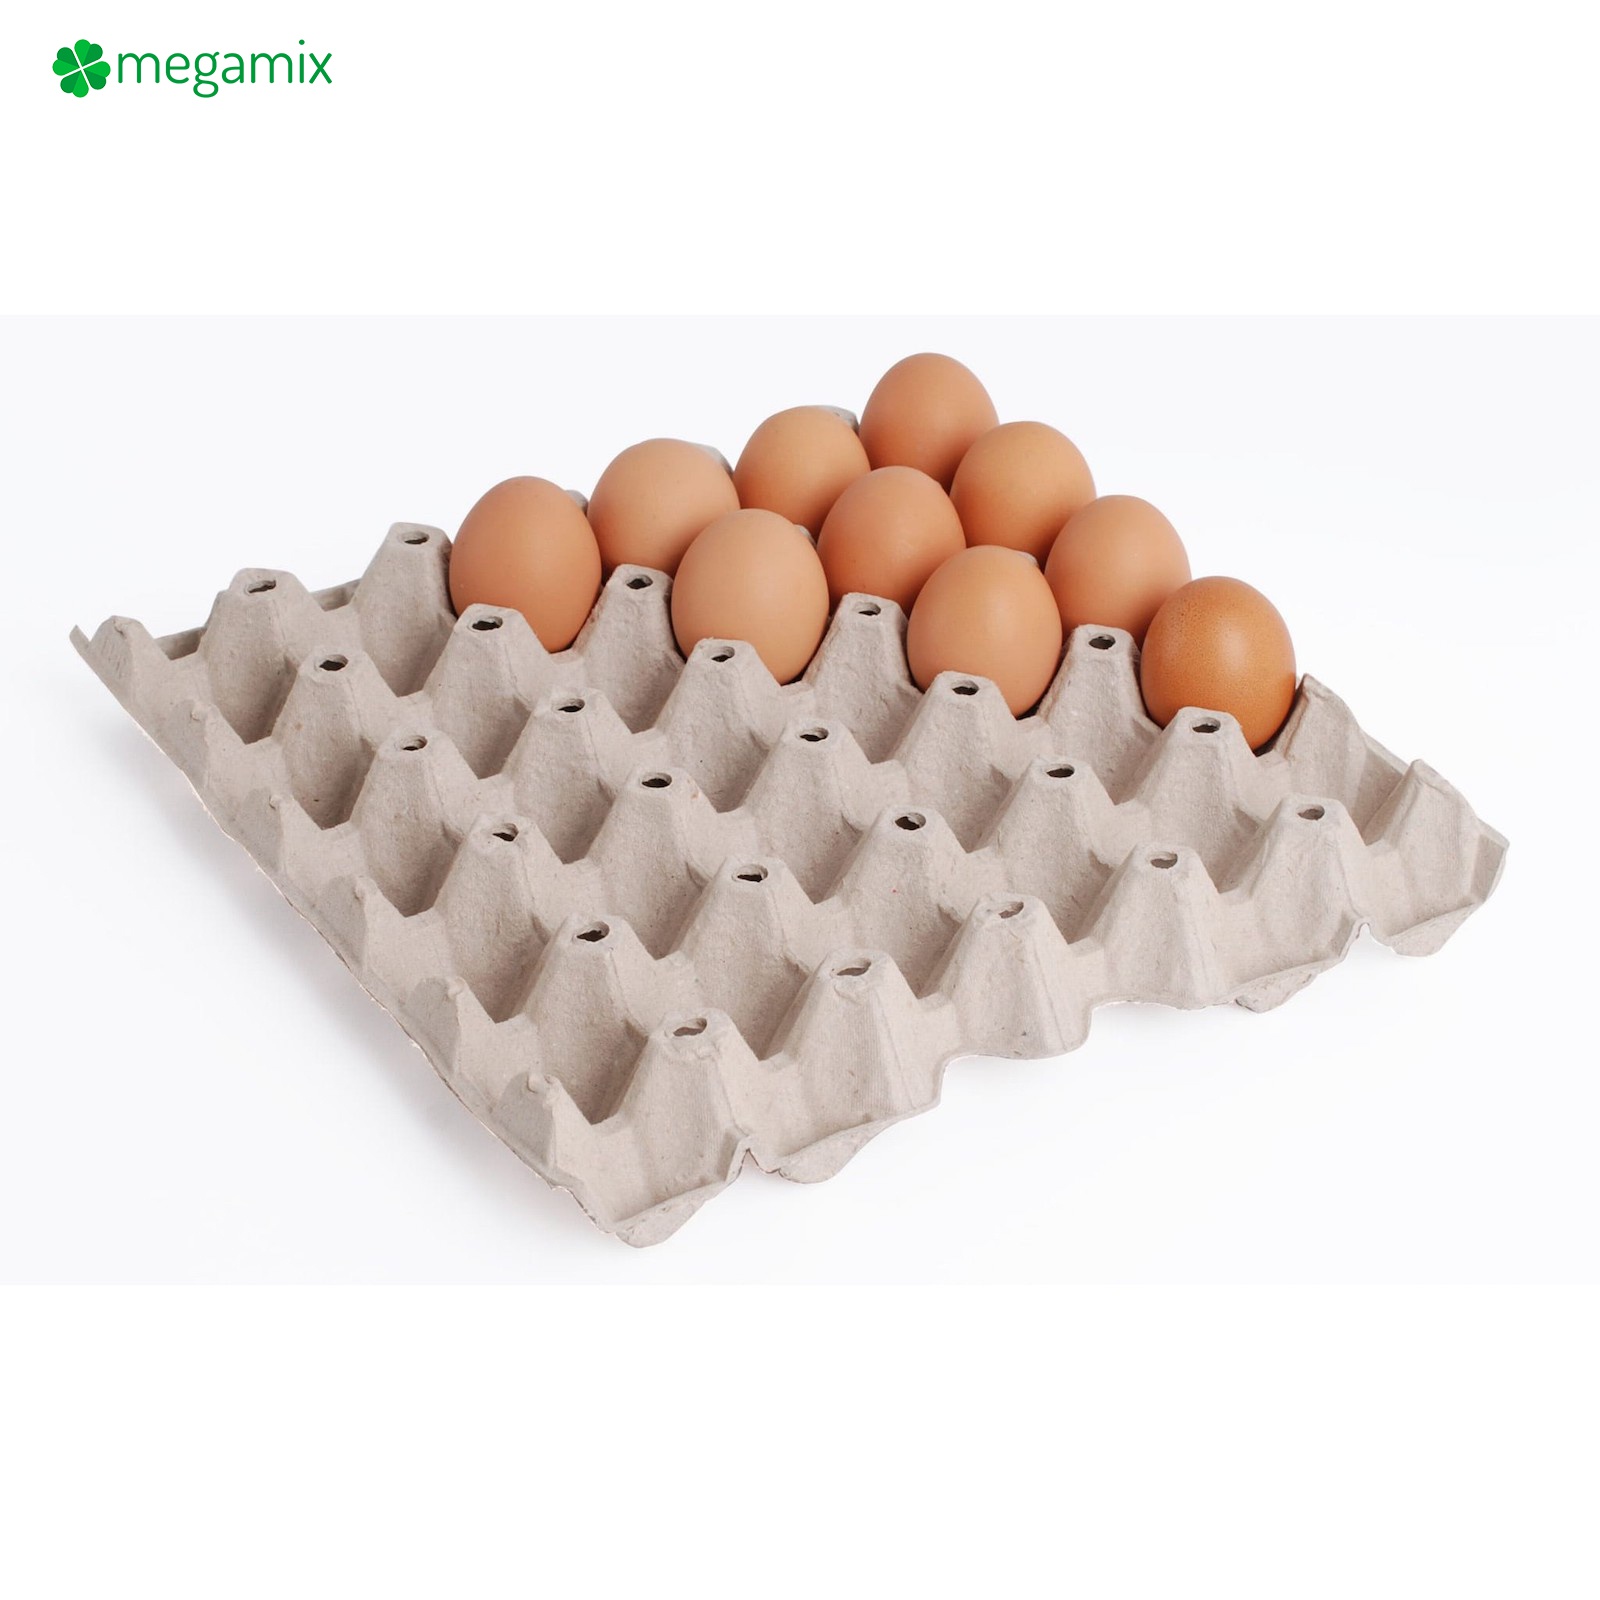 Obaly na vejce na 30 ks set 100 ks šedé megamix.shop